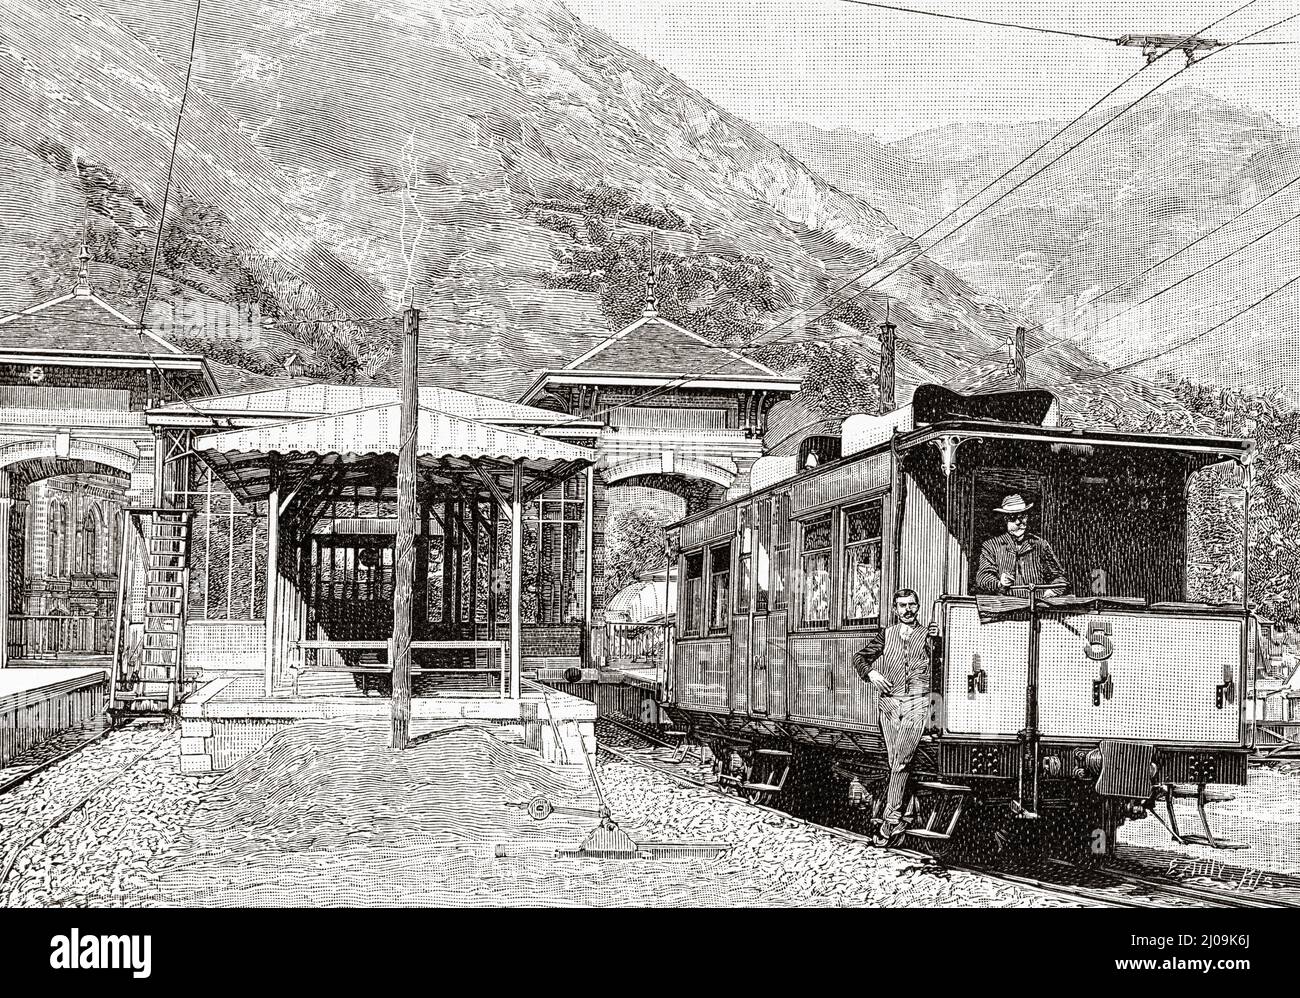 Ferrovia elettrica da Pierrefitte a Cauterets. Stazione di Cauterets, Hautes Pyrenees, Francia, Europa. Vecchia illustrazione incisa del 19th secolo da la Nature 1899 Foto Stock